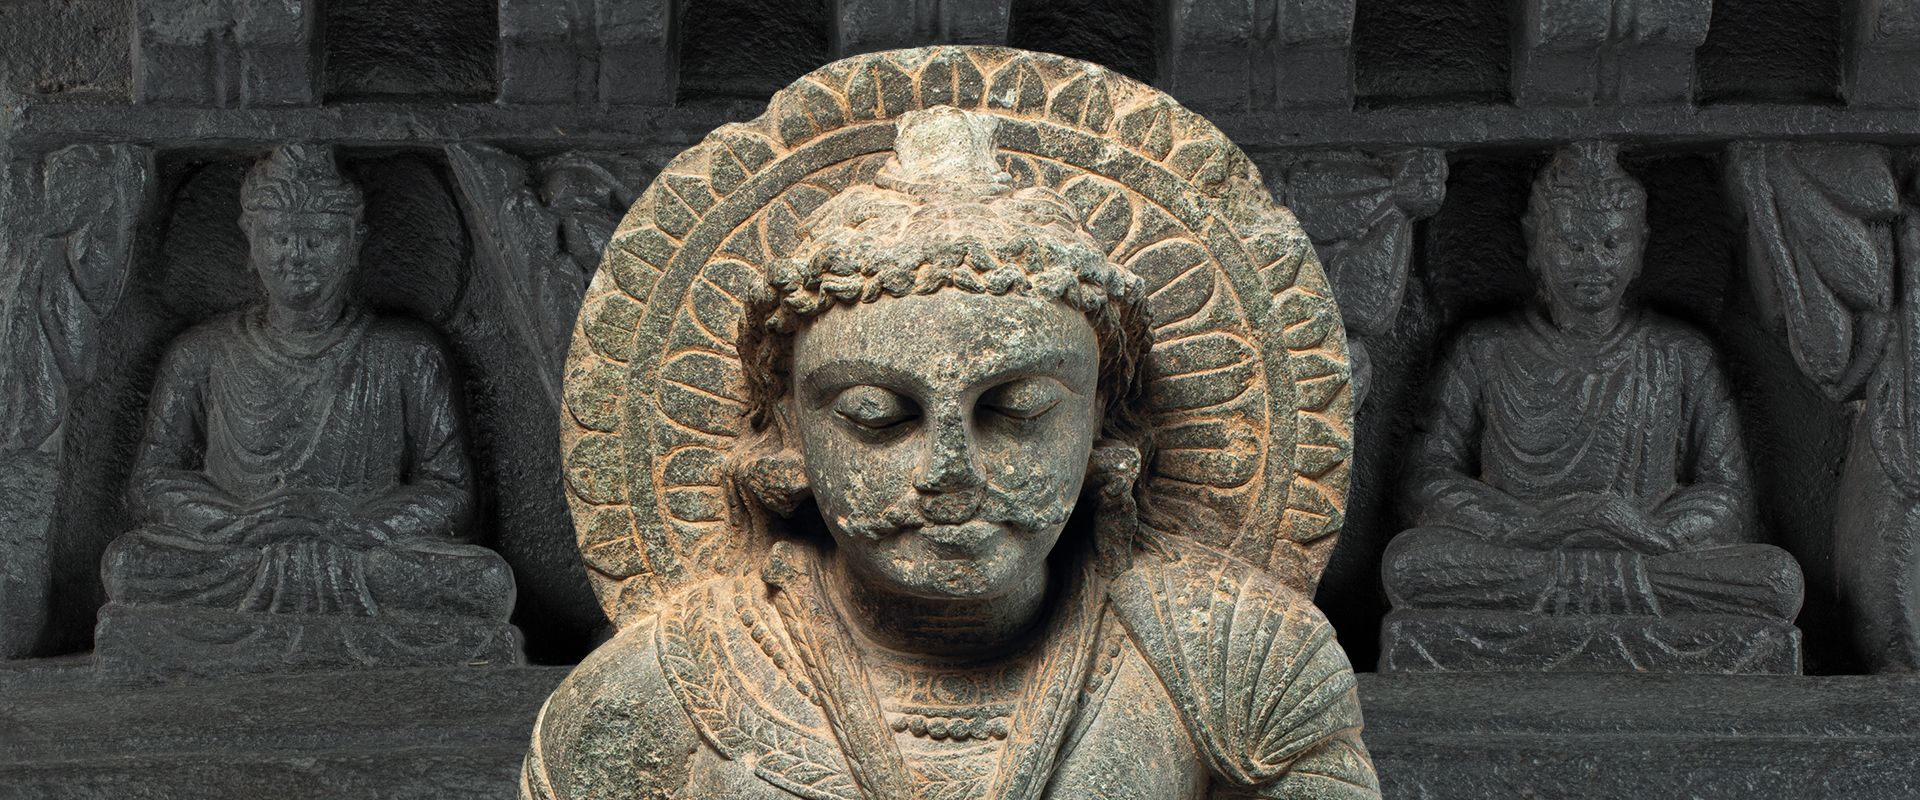 Következő kiállításunk:
Buddhák földje | GANDHÁRA. 
A Hopp Ferenc Múzeum indogörög szobrai